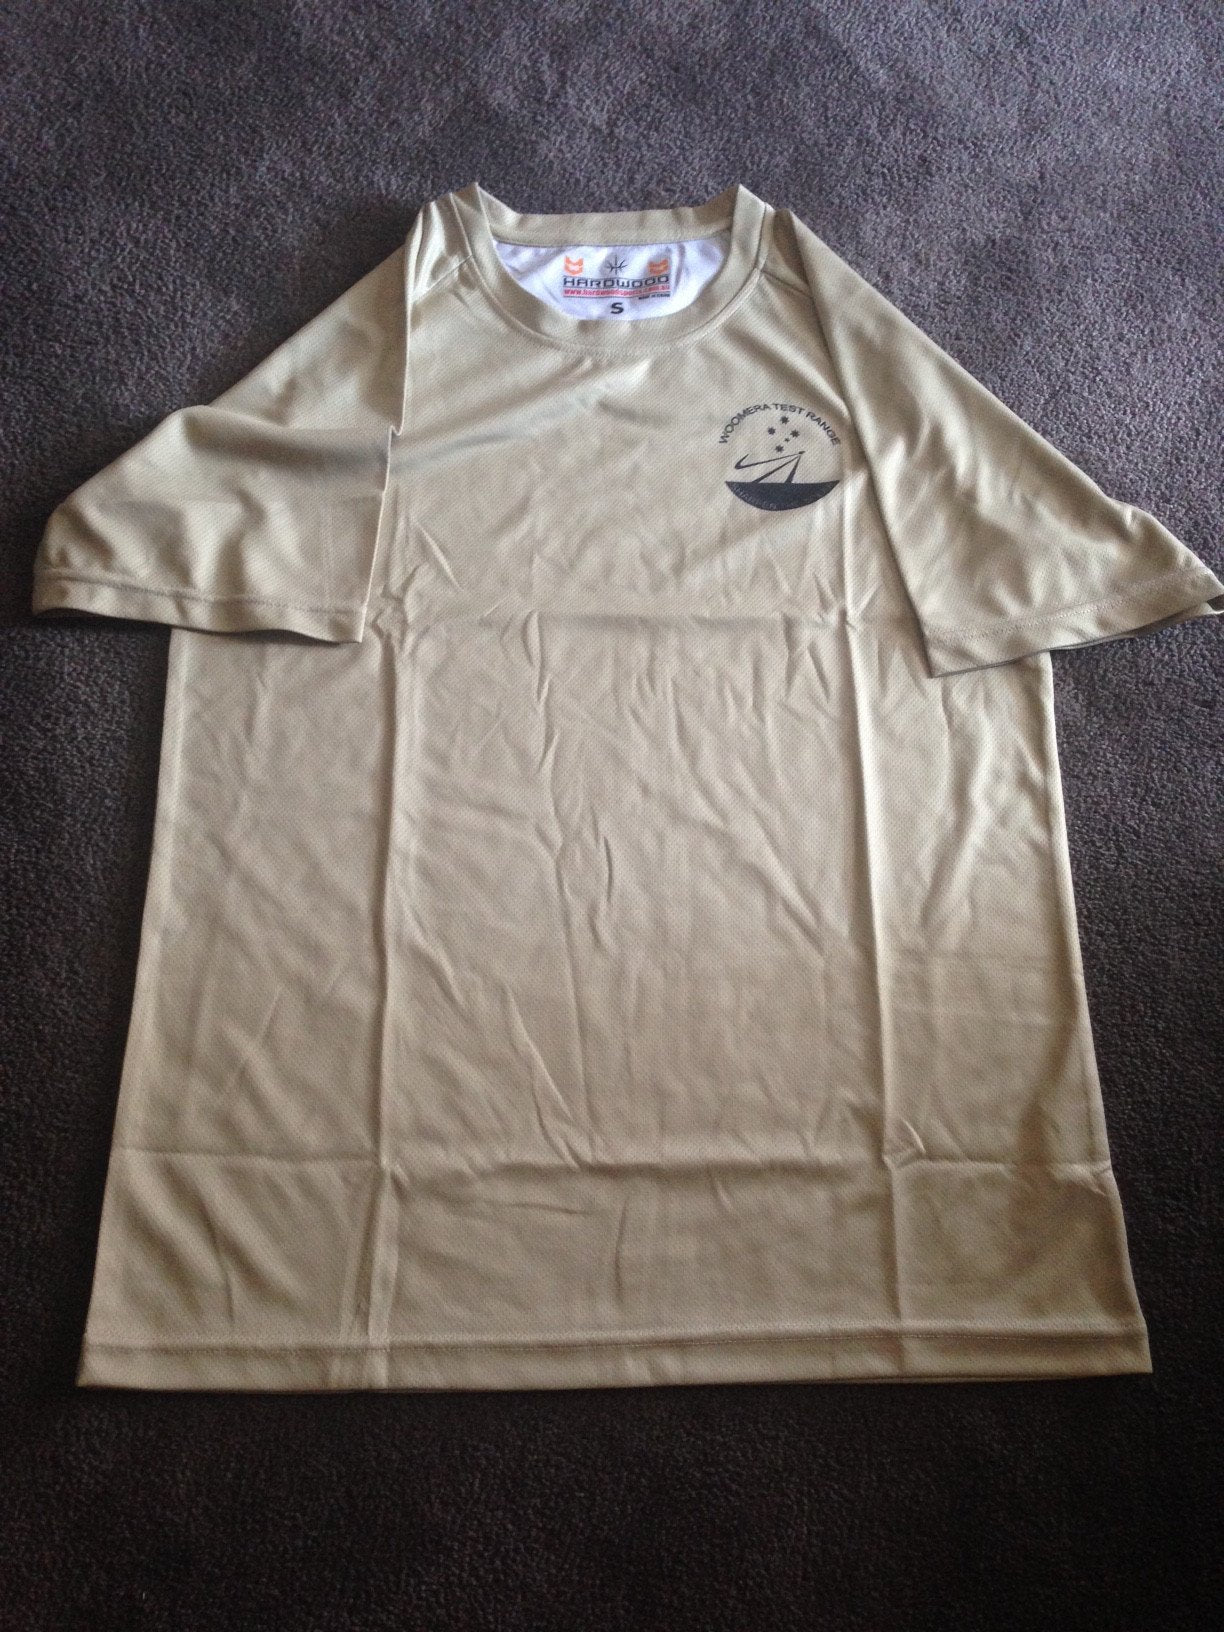 Woomera Test Range Air Force Shirt (Tan)